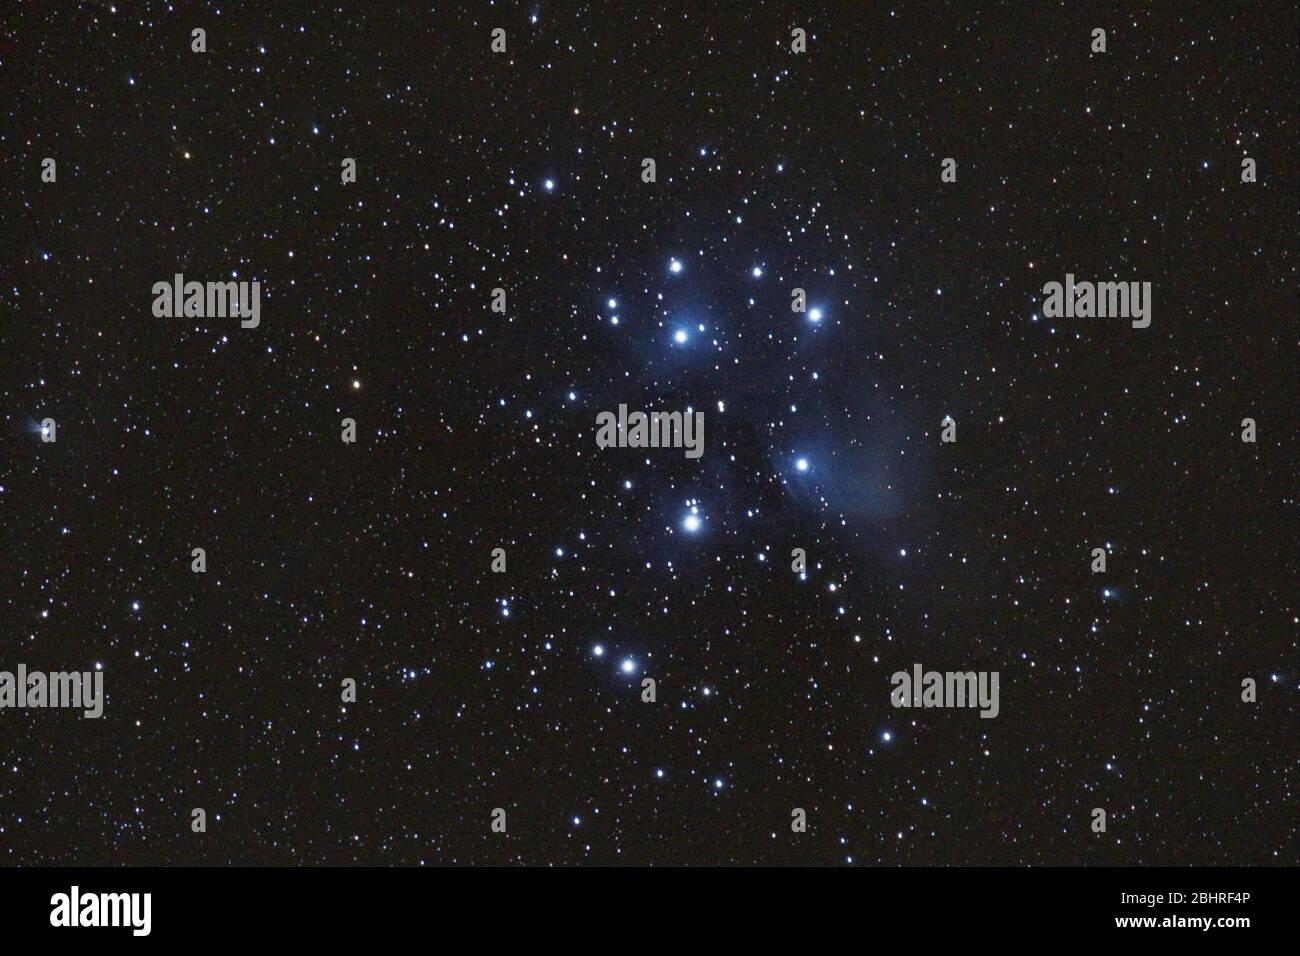 M45 - die Plejaden, Sieben Schwestern, Deep Sky Astrophoto, Wissenschaft. Der offene Sternhaufen der plejaden M45 im Sternbild stier. Stockfoto